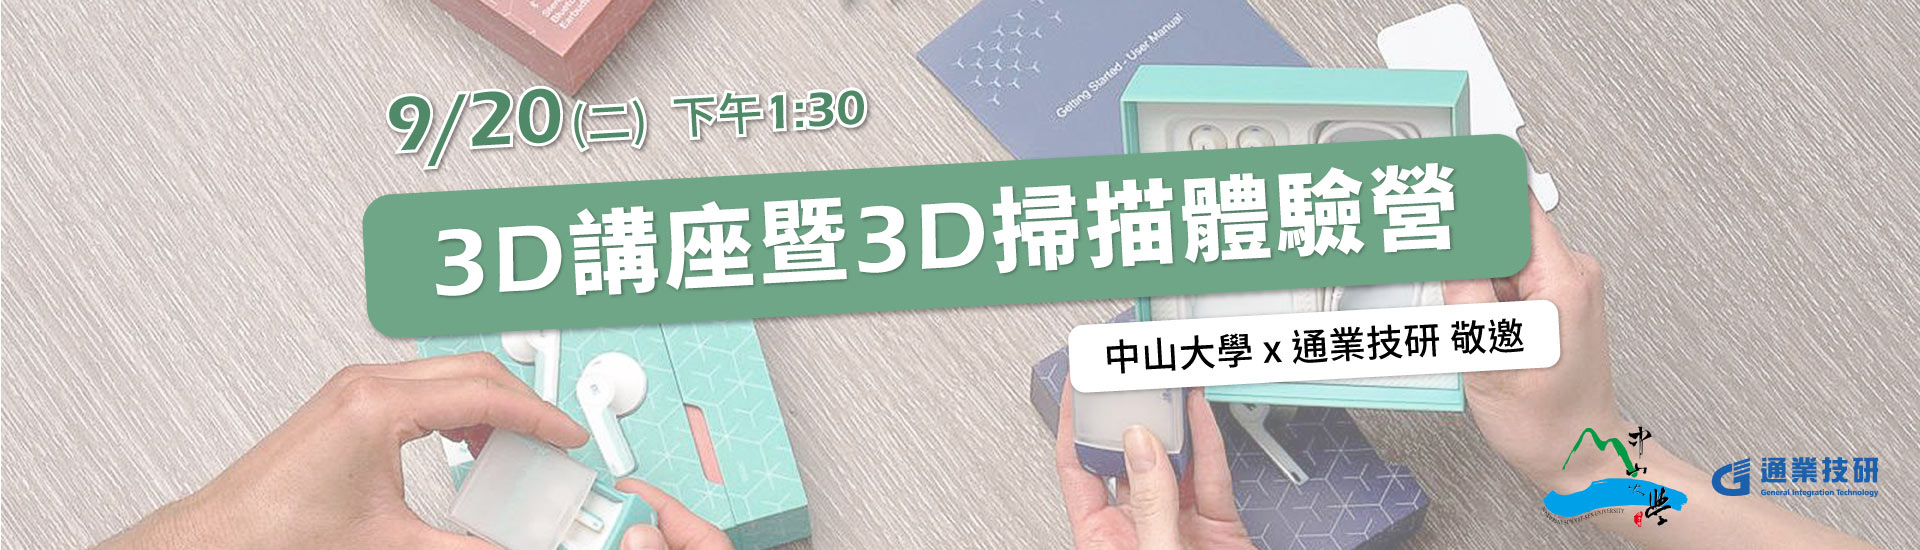 【 3D講座暨3D掃描體驗營 】中山大學 x 通業技研 敬邀